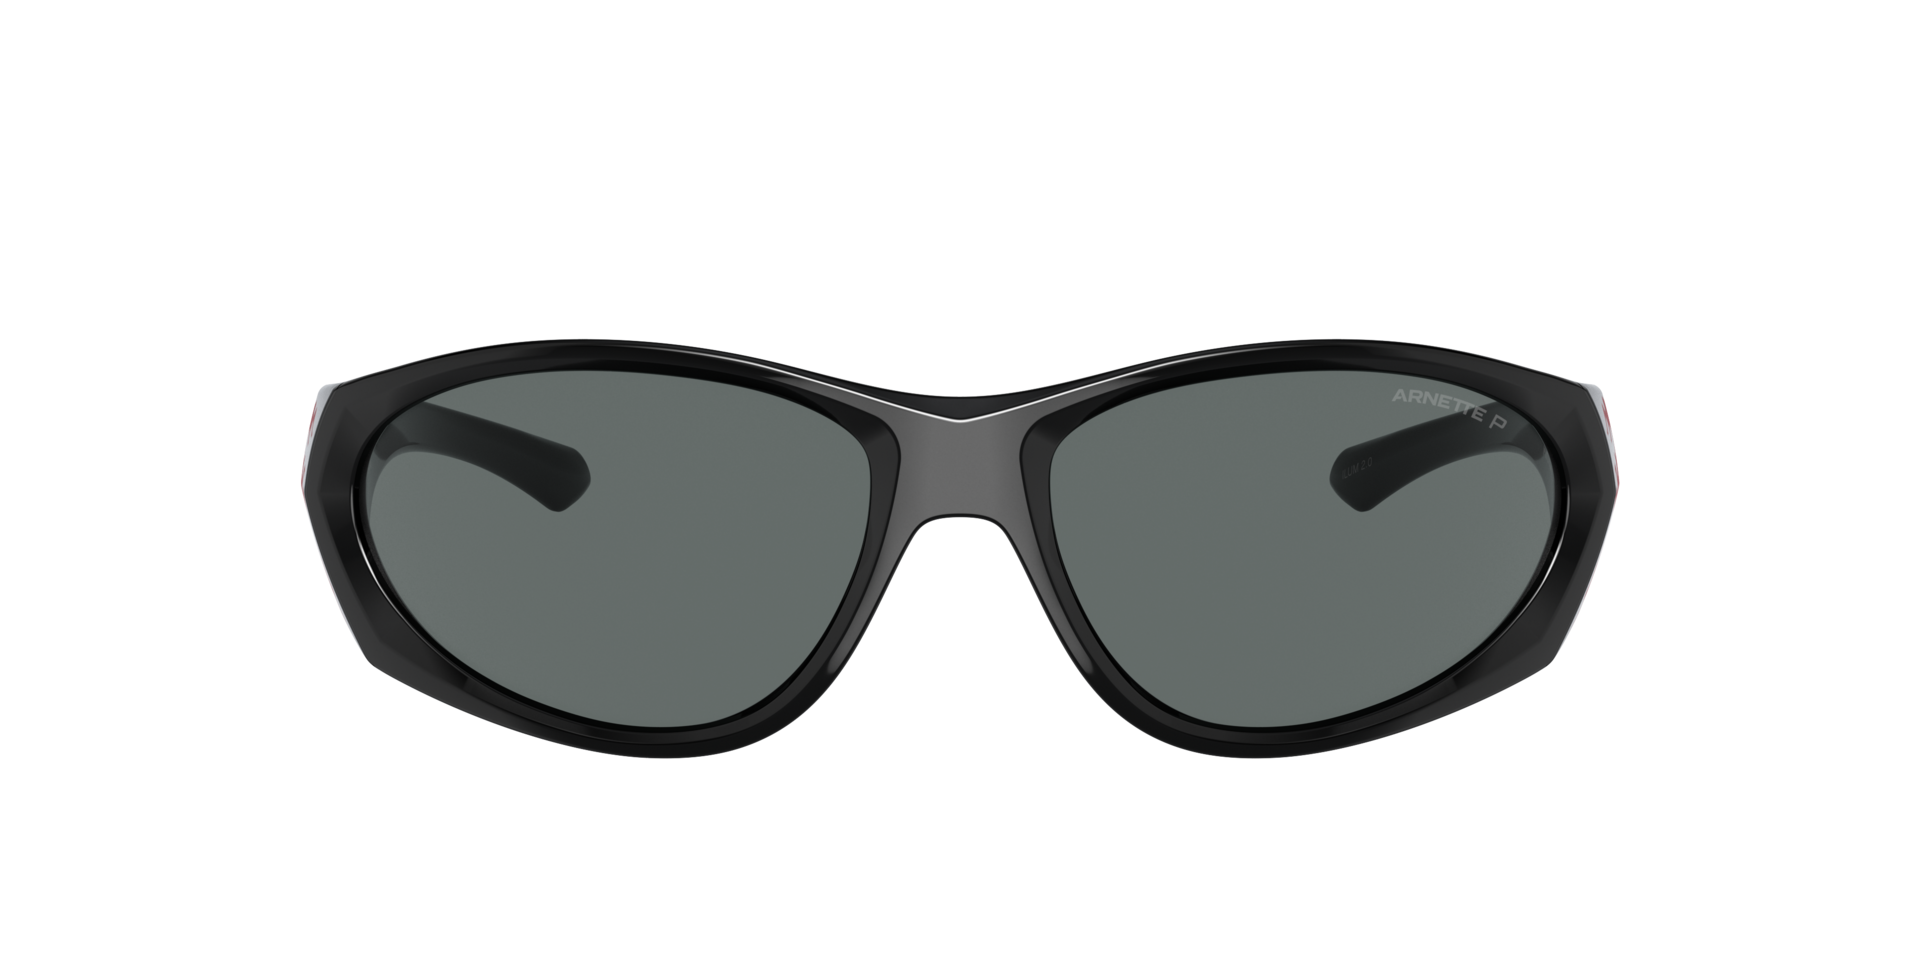 Das Bild zeigt die Sonnenbrille AN4342 294681 von der Marke Arnette in schwarz.